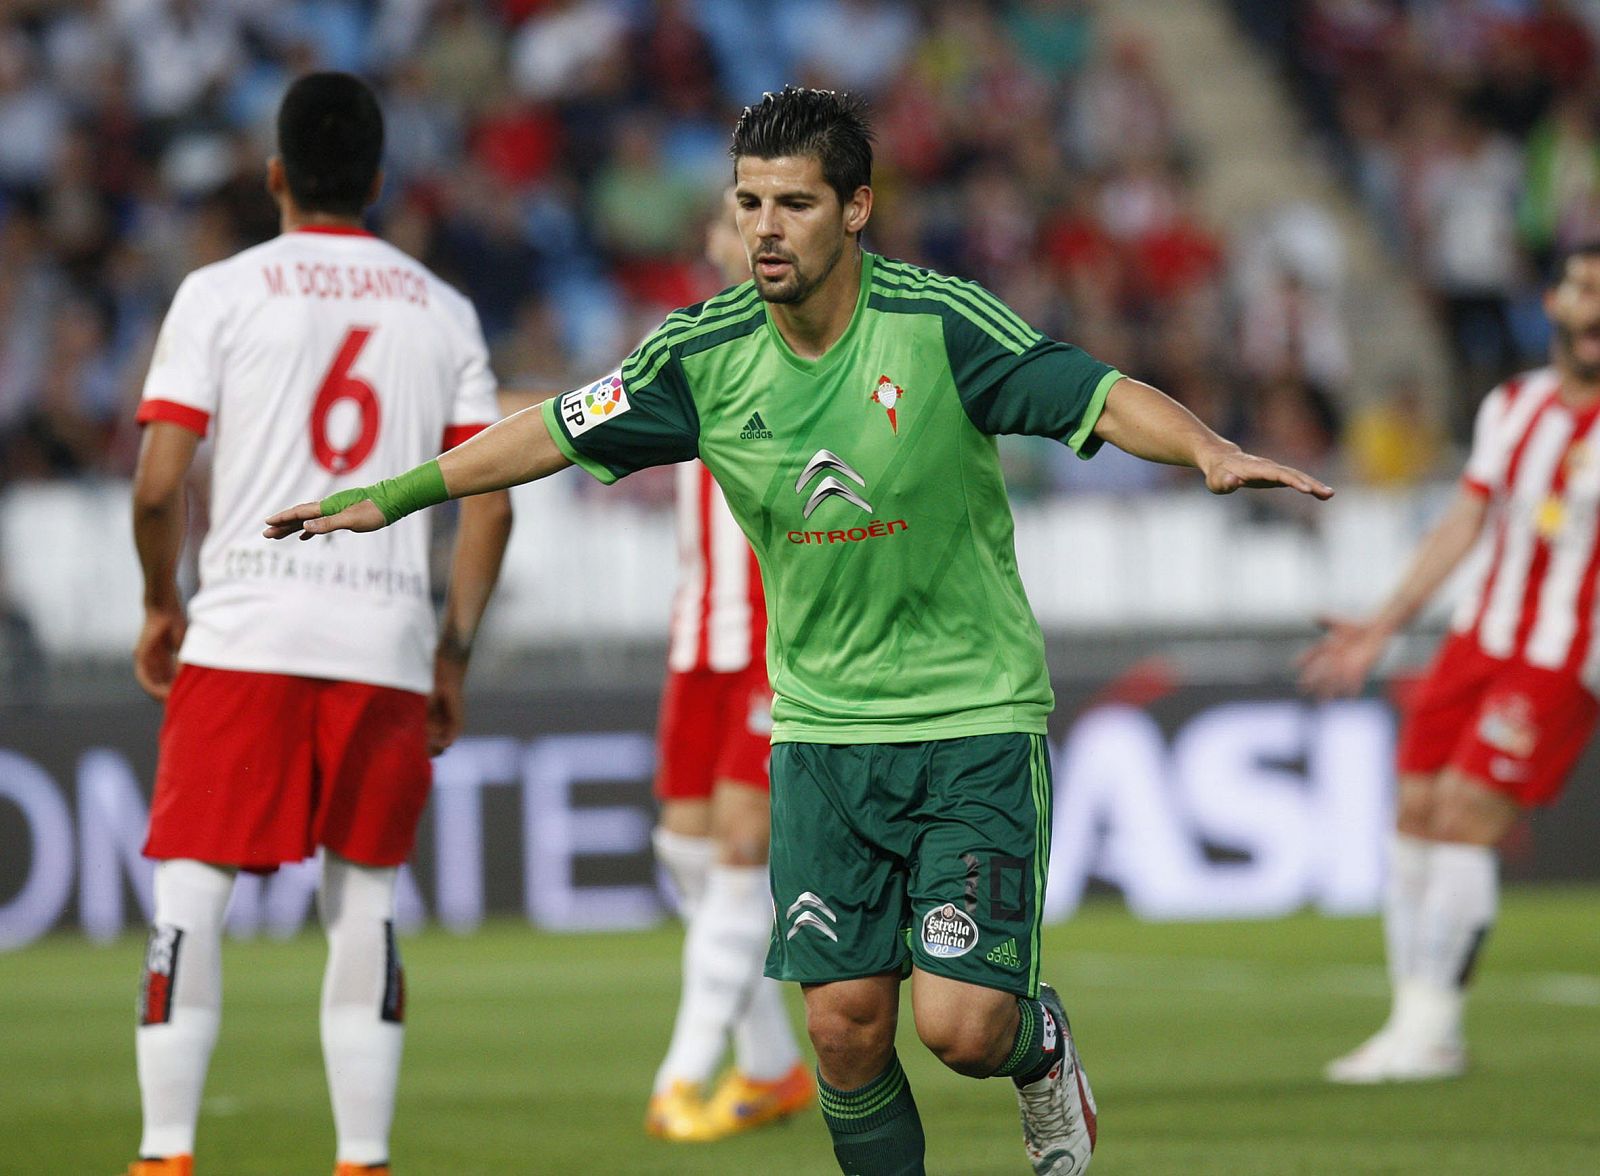 El delantero del Celta Nolito celebra un gol al Almería